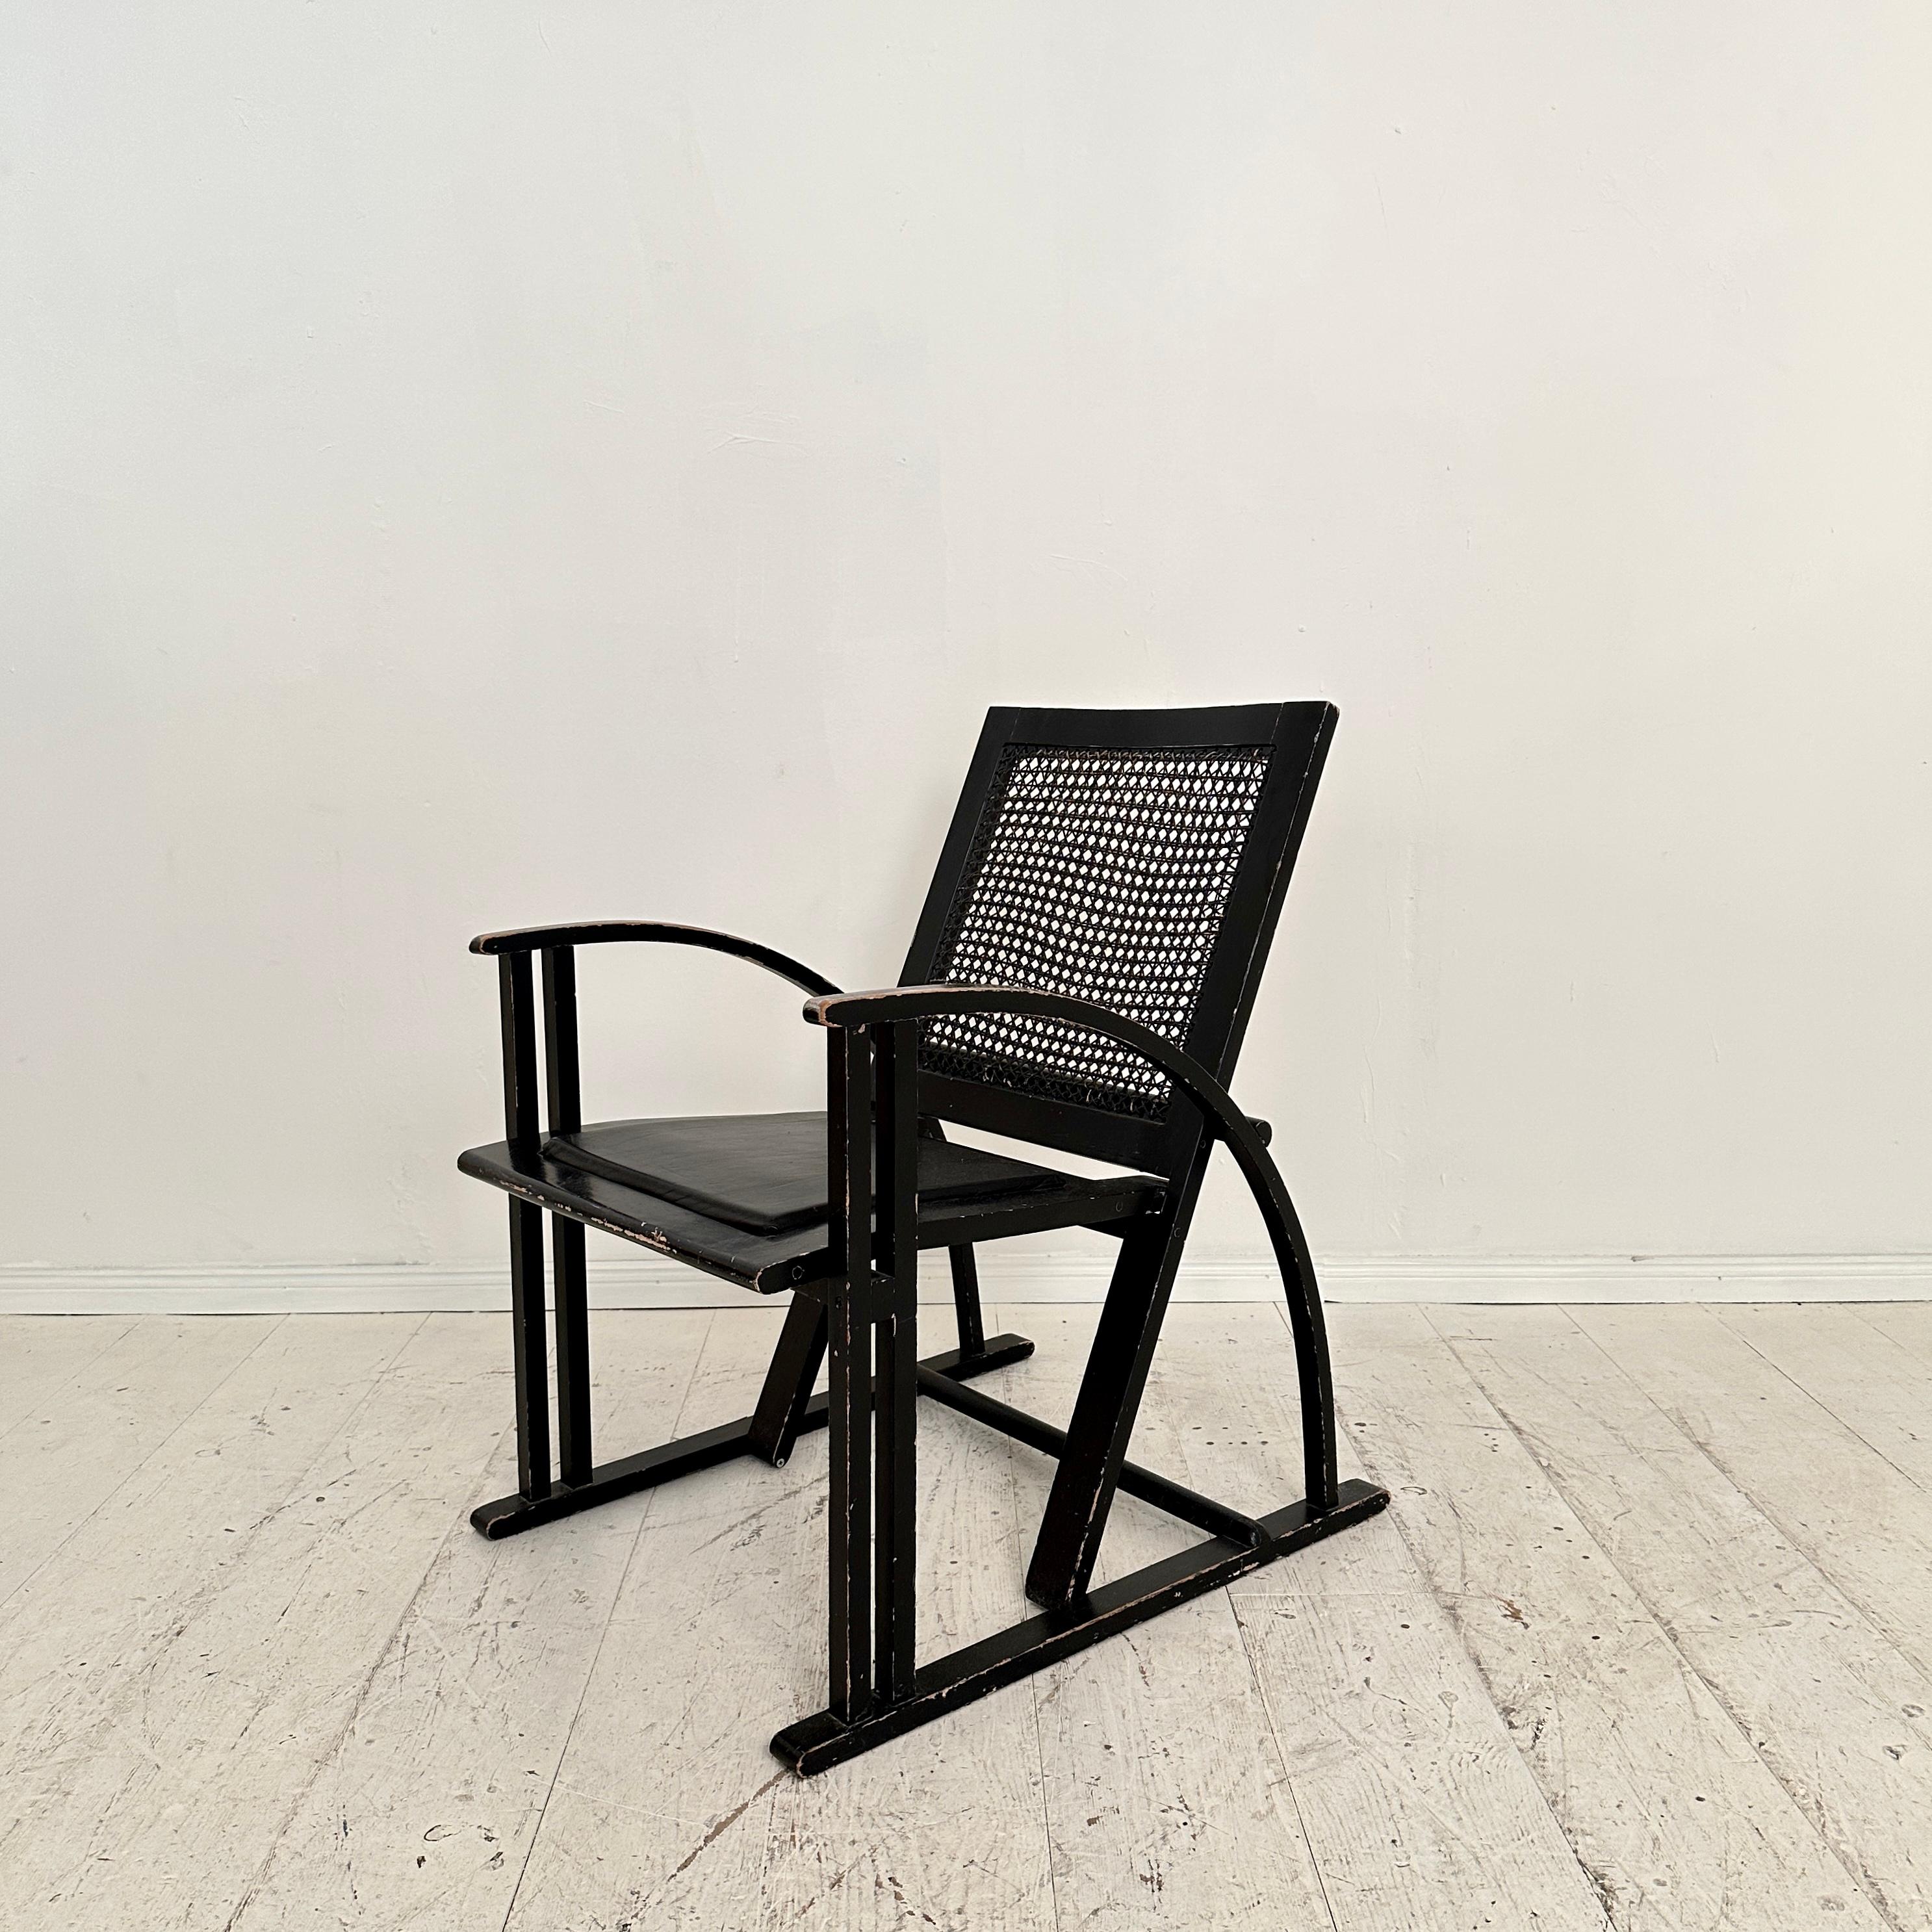 Fantastique fauteuil noir de Pascal Mourgue pour Pamco Triconfort, vers 1980. Les chaises sont fabriquées en bois de hêtre laqué noir. L'assise est recouverte de cuir noir et le dossier est canné.
Une pièce unique qui attirera tous les regards dans